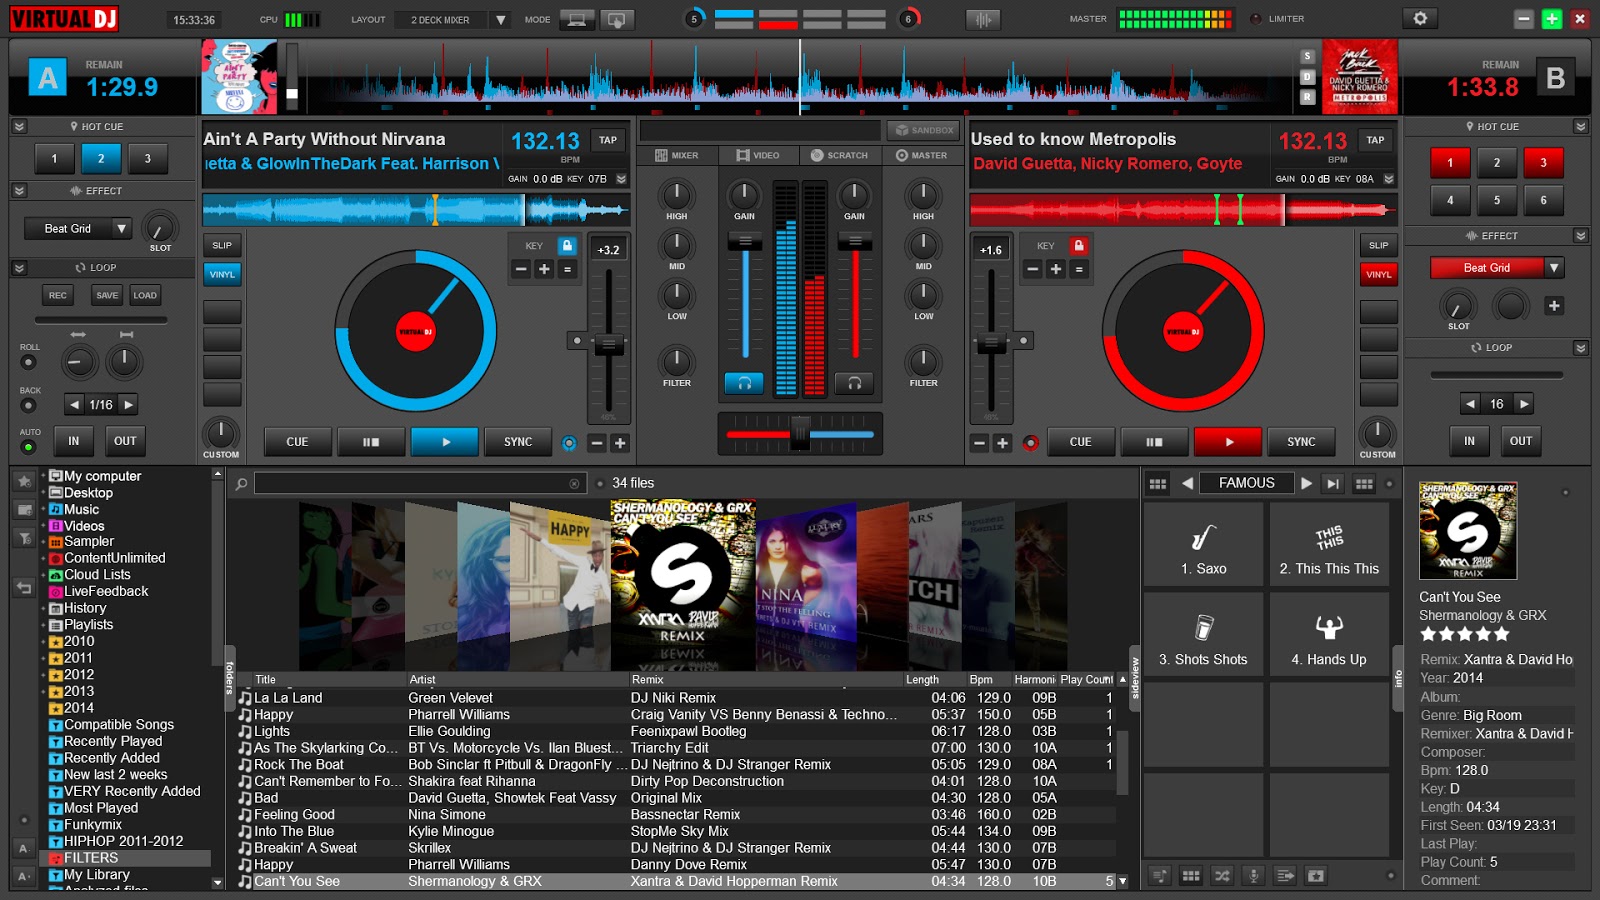 Virtual dj 8 beat sampler free download for windows 10